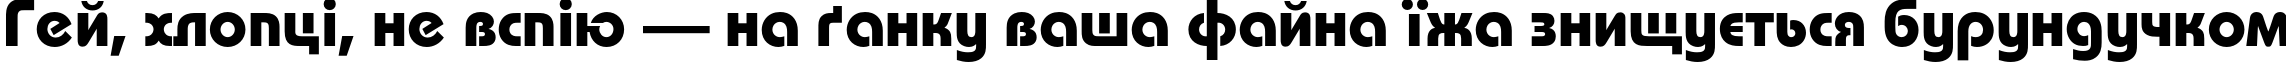 Пример написания шрифтом BauhausC Medium Bold текста на украинском